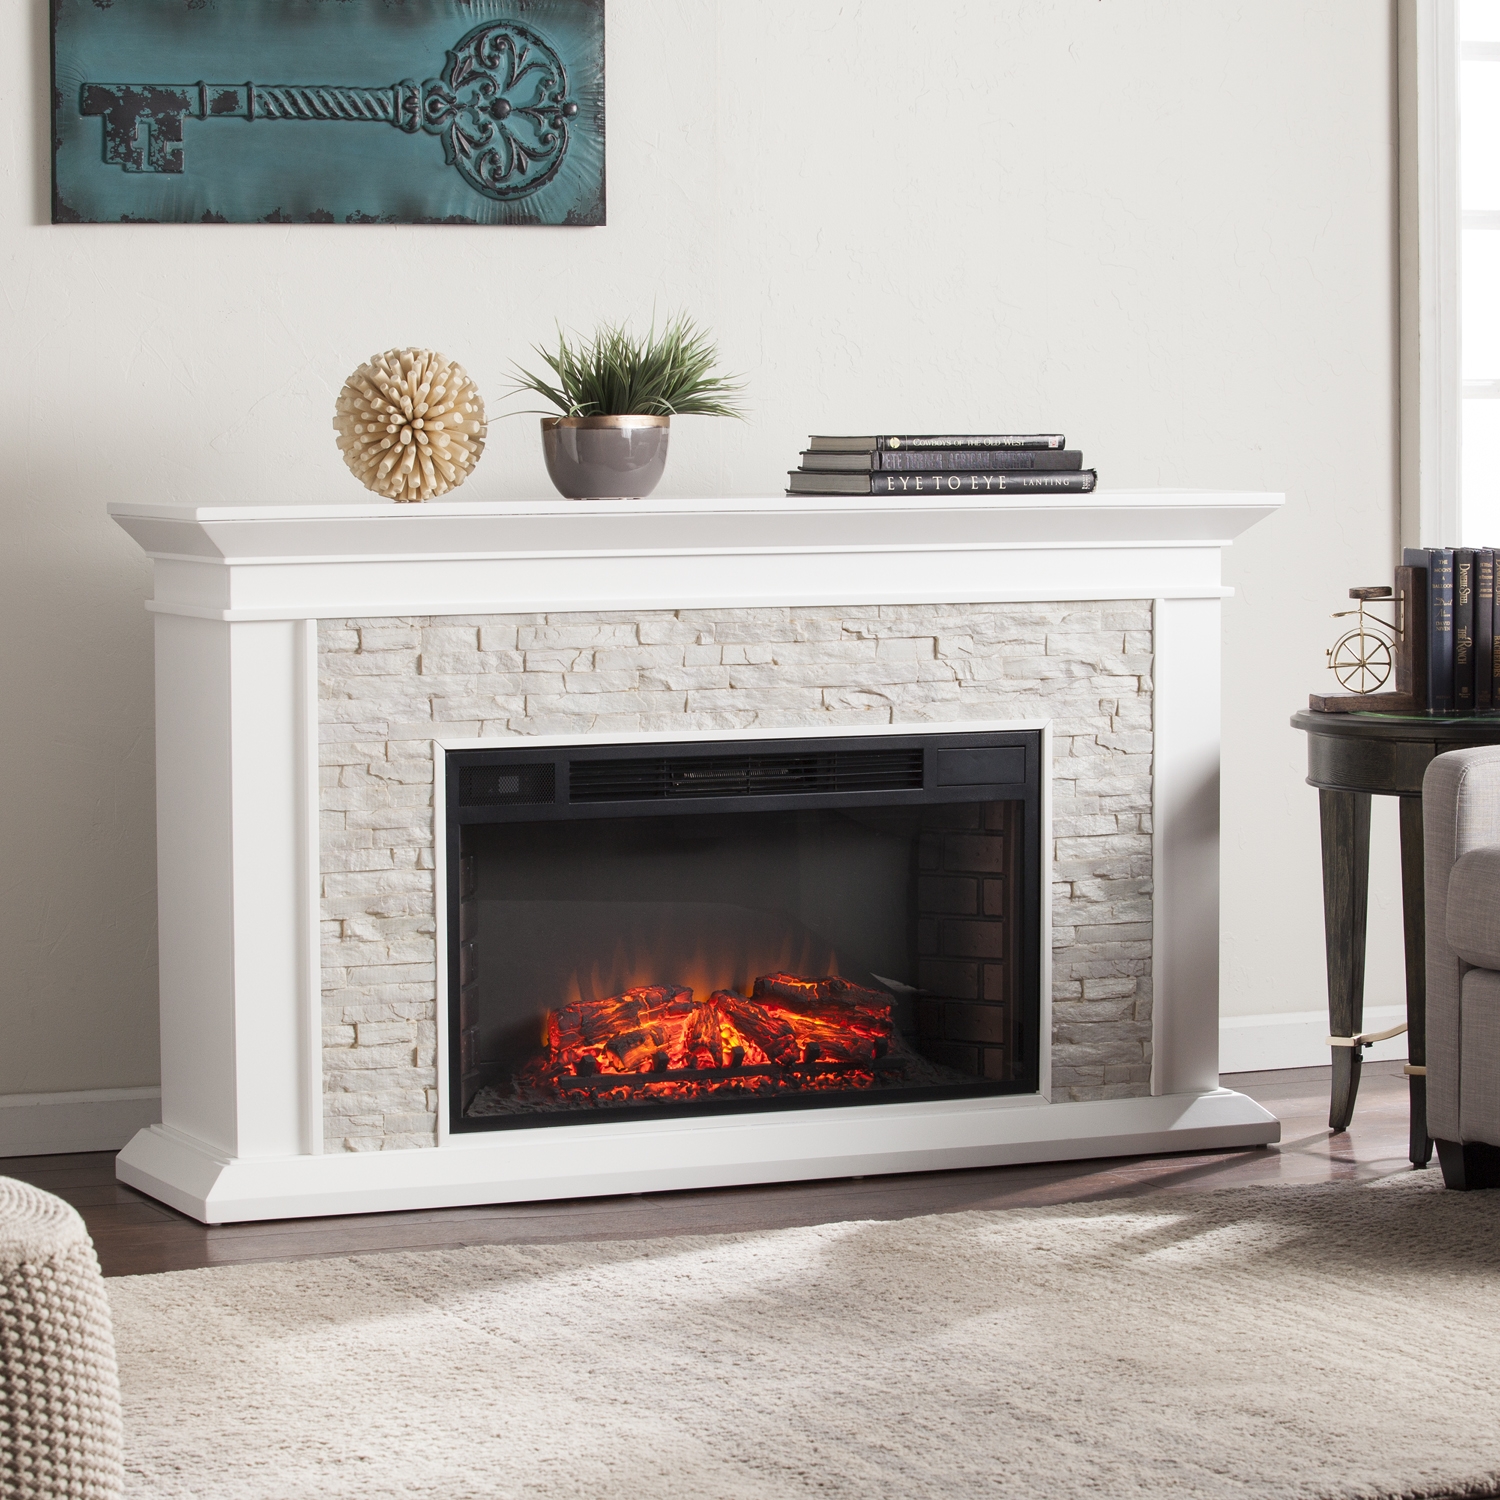 Majestic Fireplace Blower Beautiful White Fireplace Electric Charming Fireplace